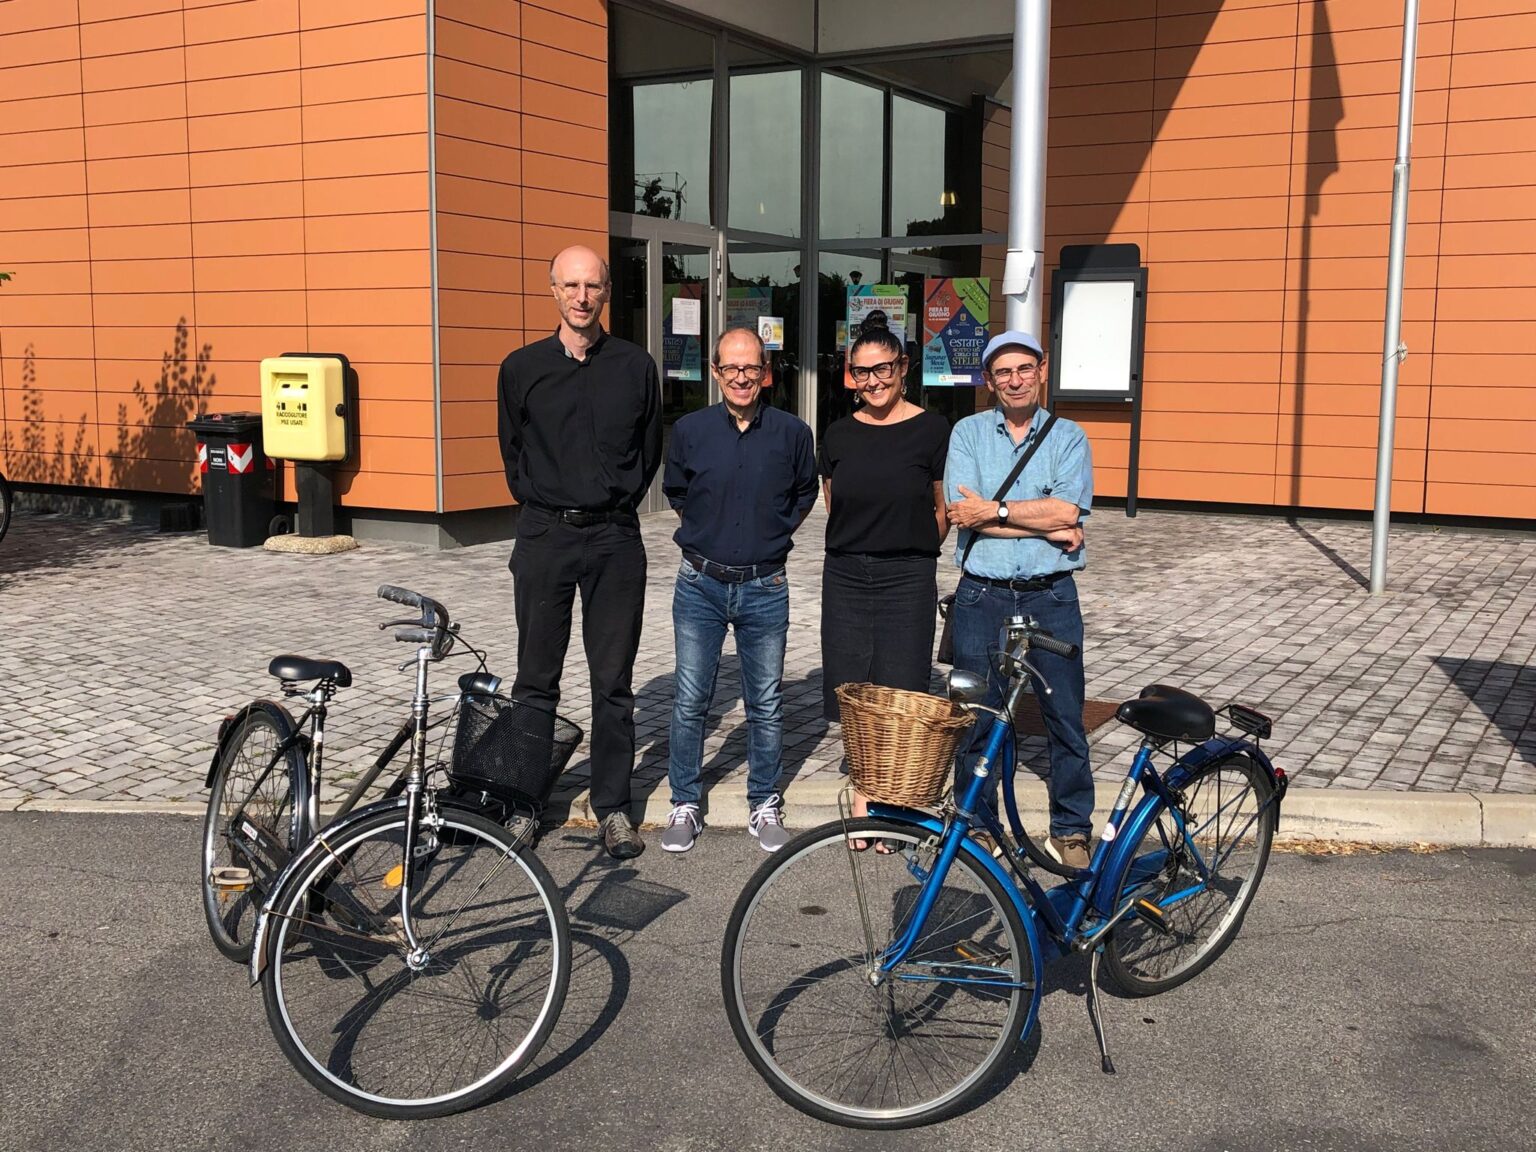 Nella foto la consegna delle biciclette. Da sinistra don Filippo Serafini, Roberto Ganzerli, presidente de “La Zerla”, l’assessore Elisabetta Malagoli, il direttore della Caritas sanfeliciana Stefano Pignatti.